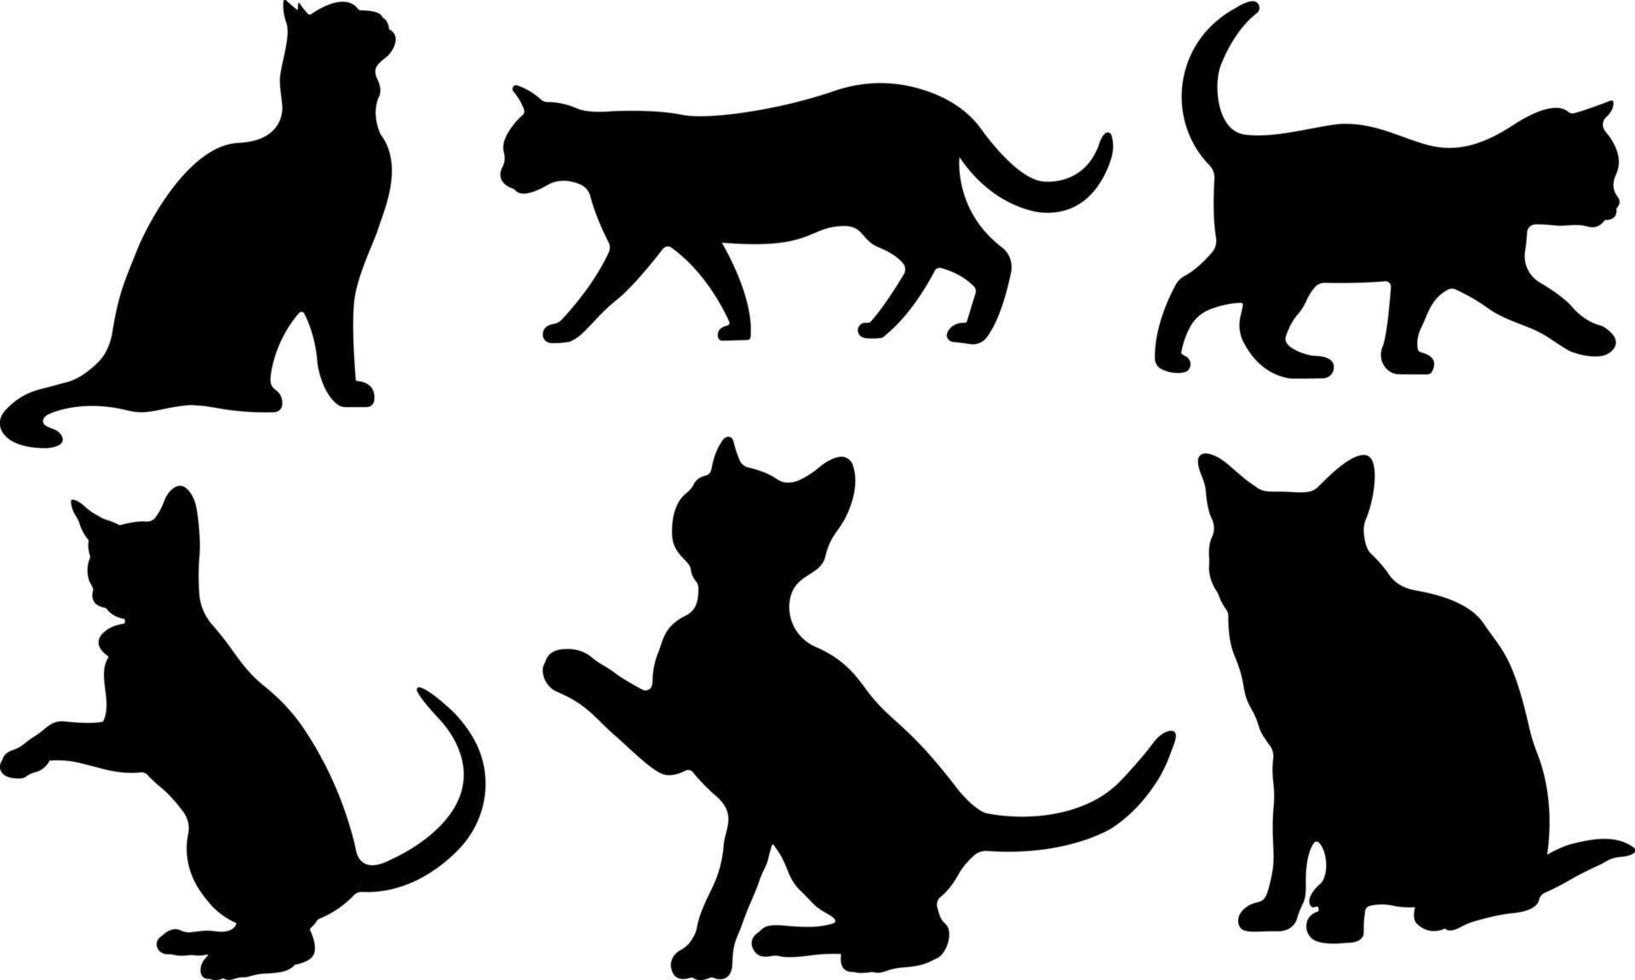 fichiers vectoriels de silhouette noire de chat vecteur